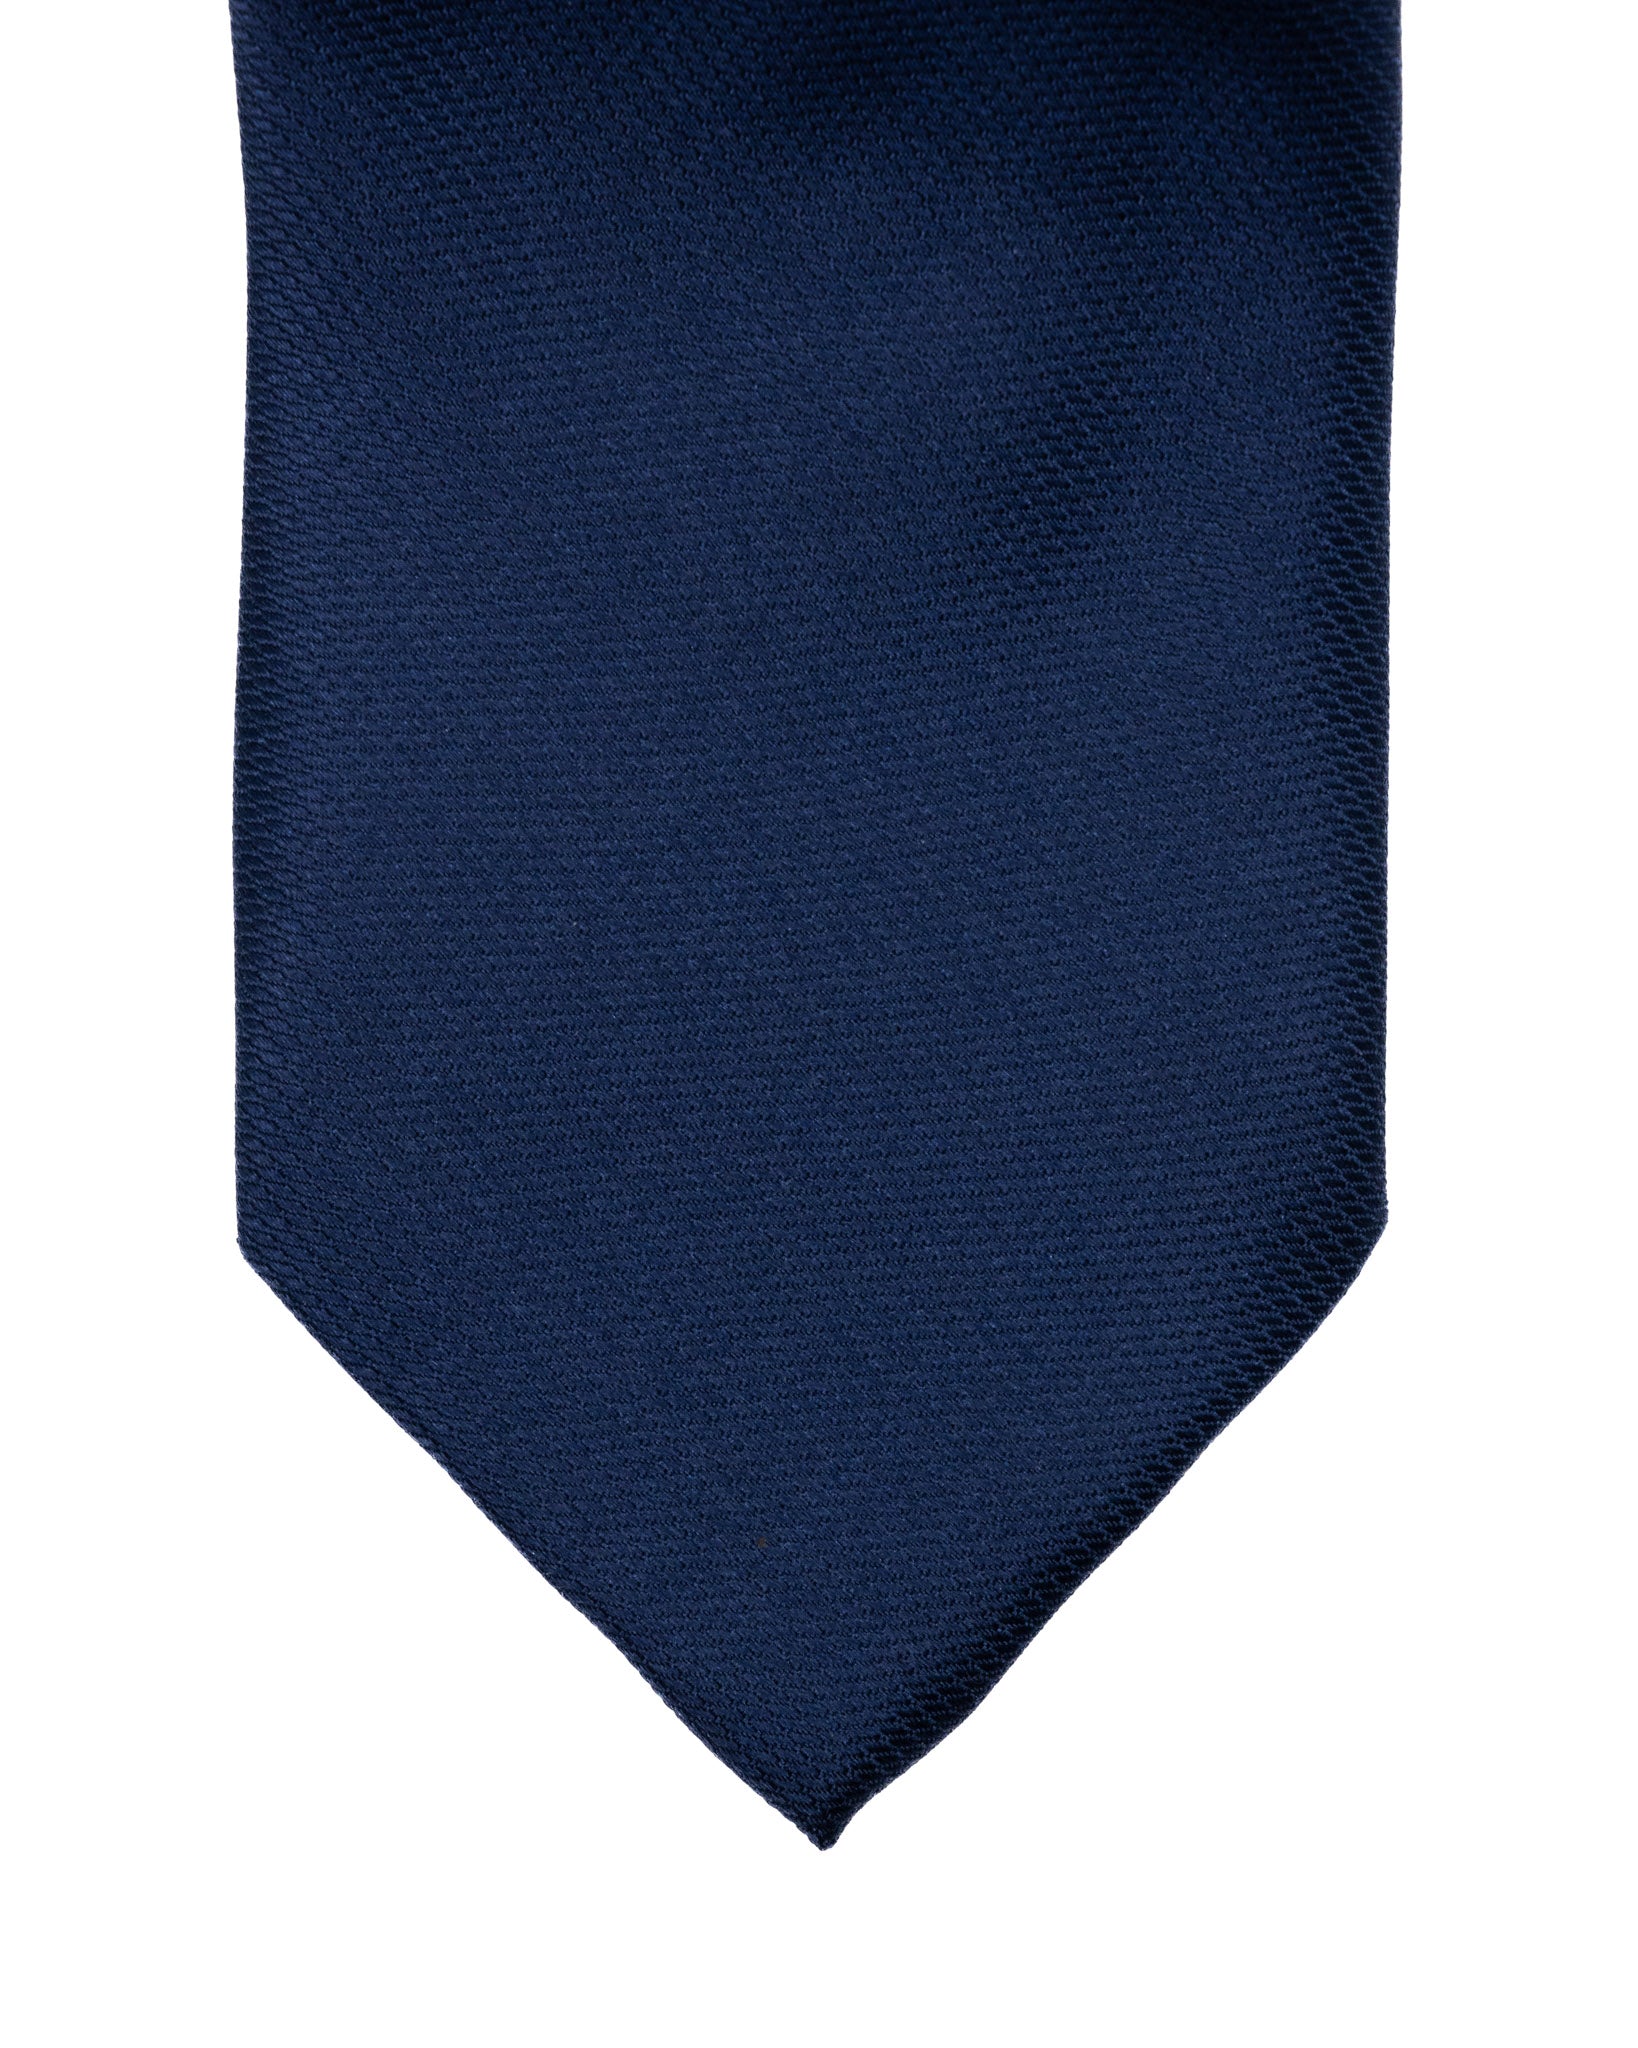 Cravatta - in seta armaturata blu